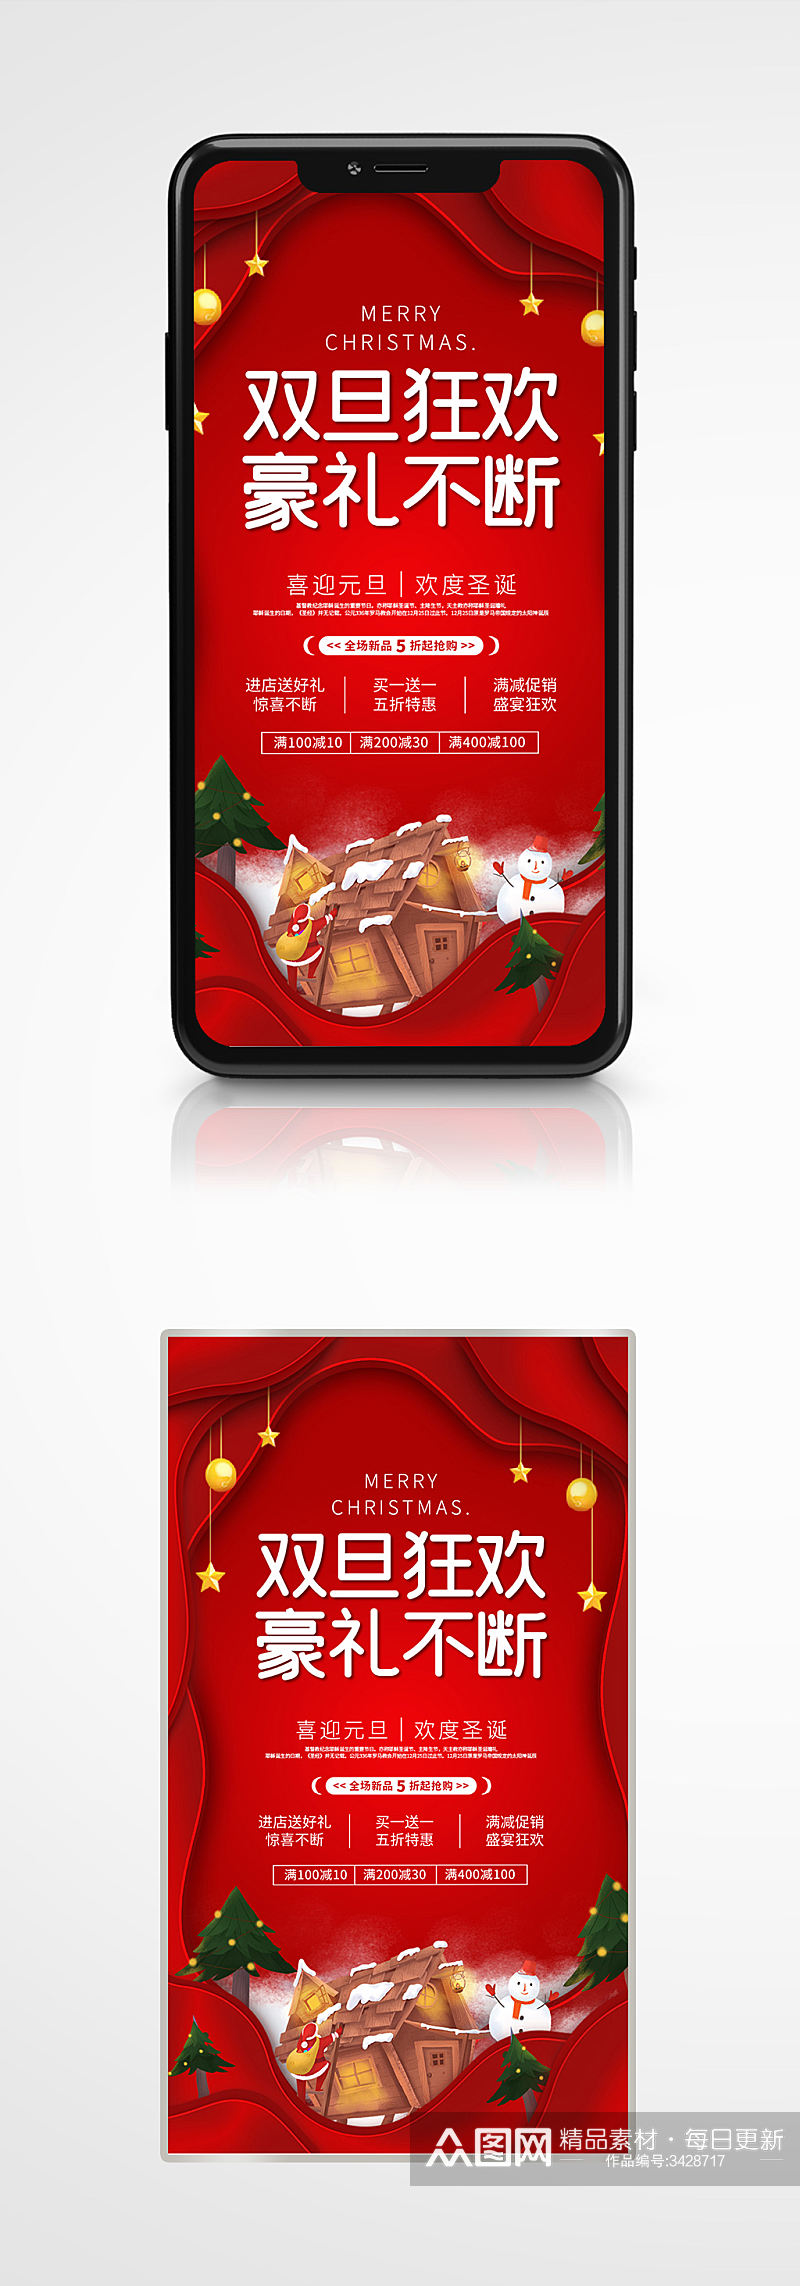 双旦促销宣传手机海报红色插画圣诞元旦素材